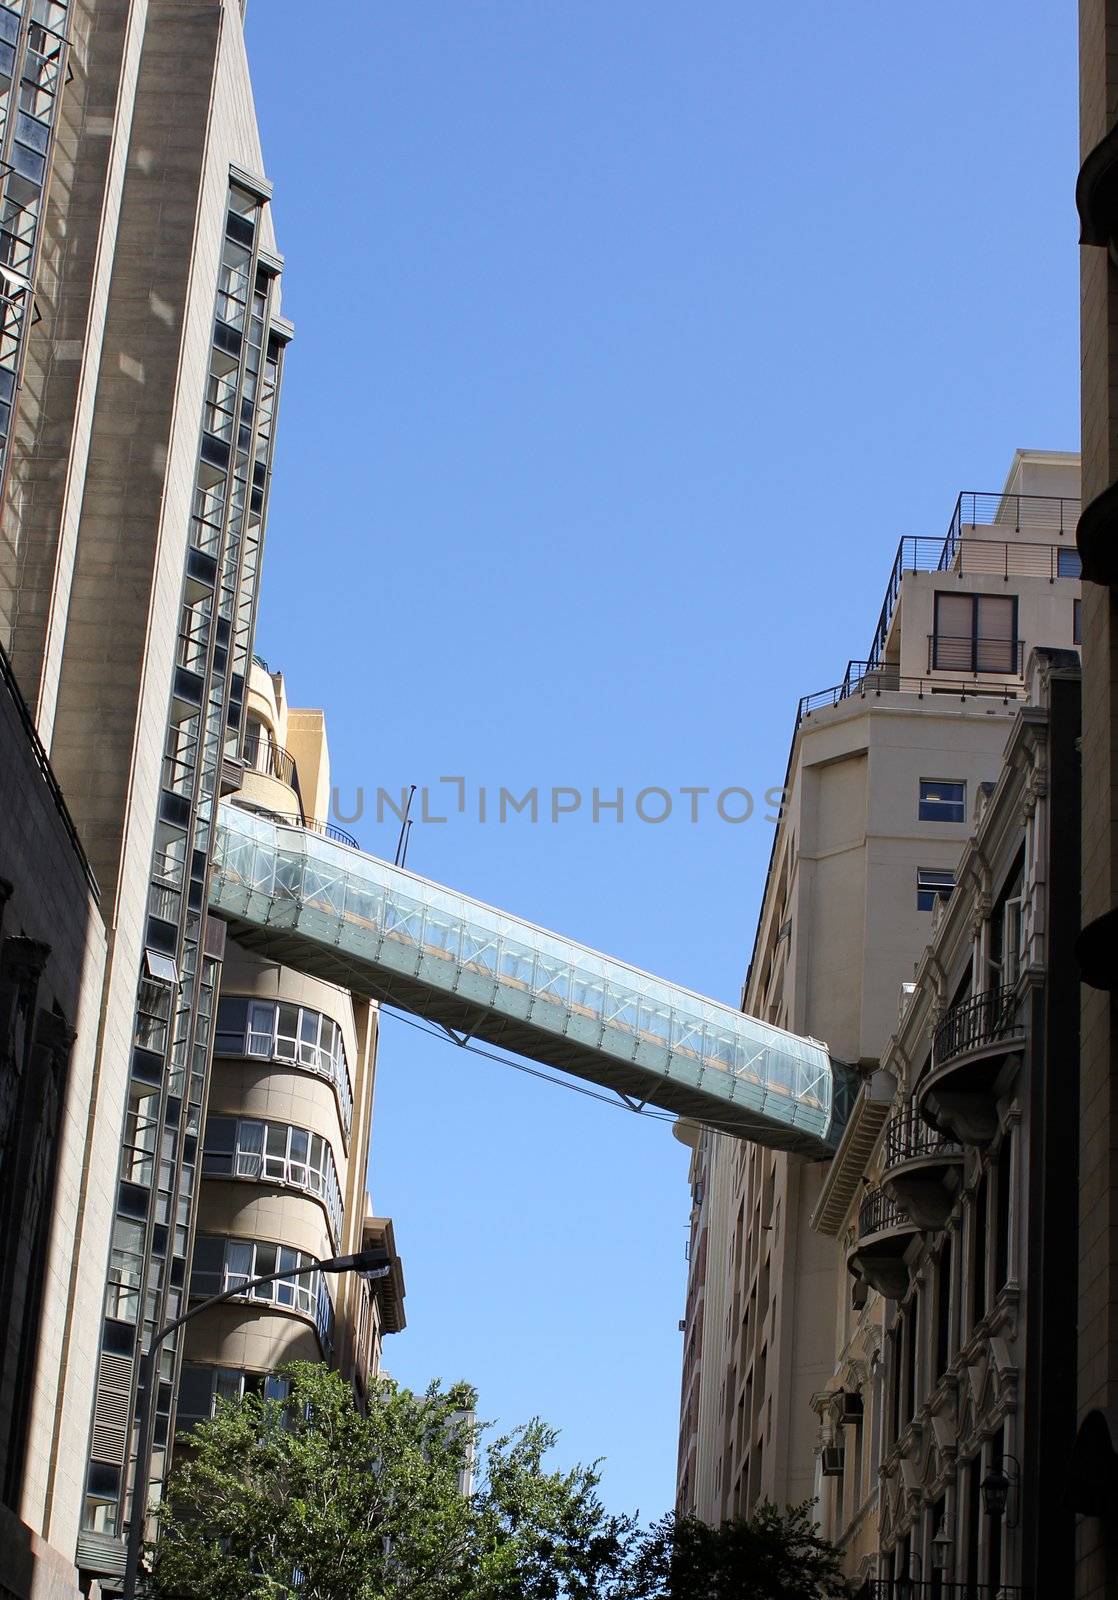 Bridge between buildings by dwaschnig_photo